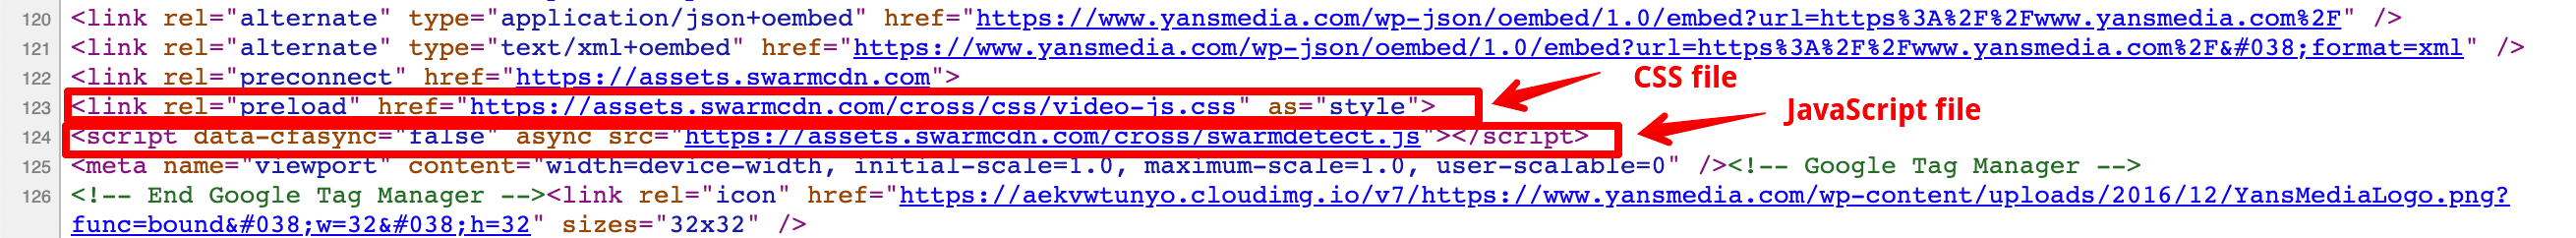 Fichiers CSS et JS dans la section de l'en-tête